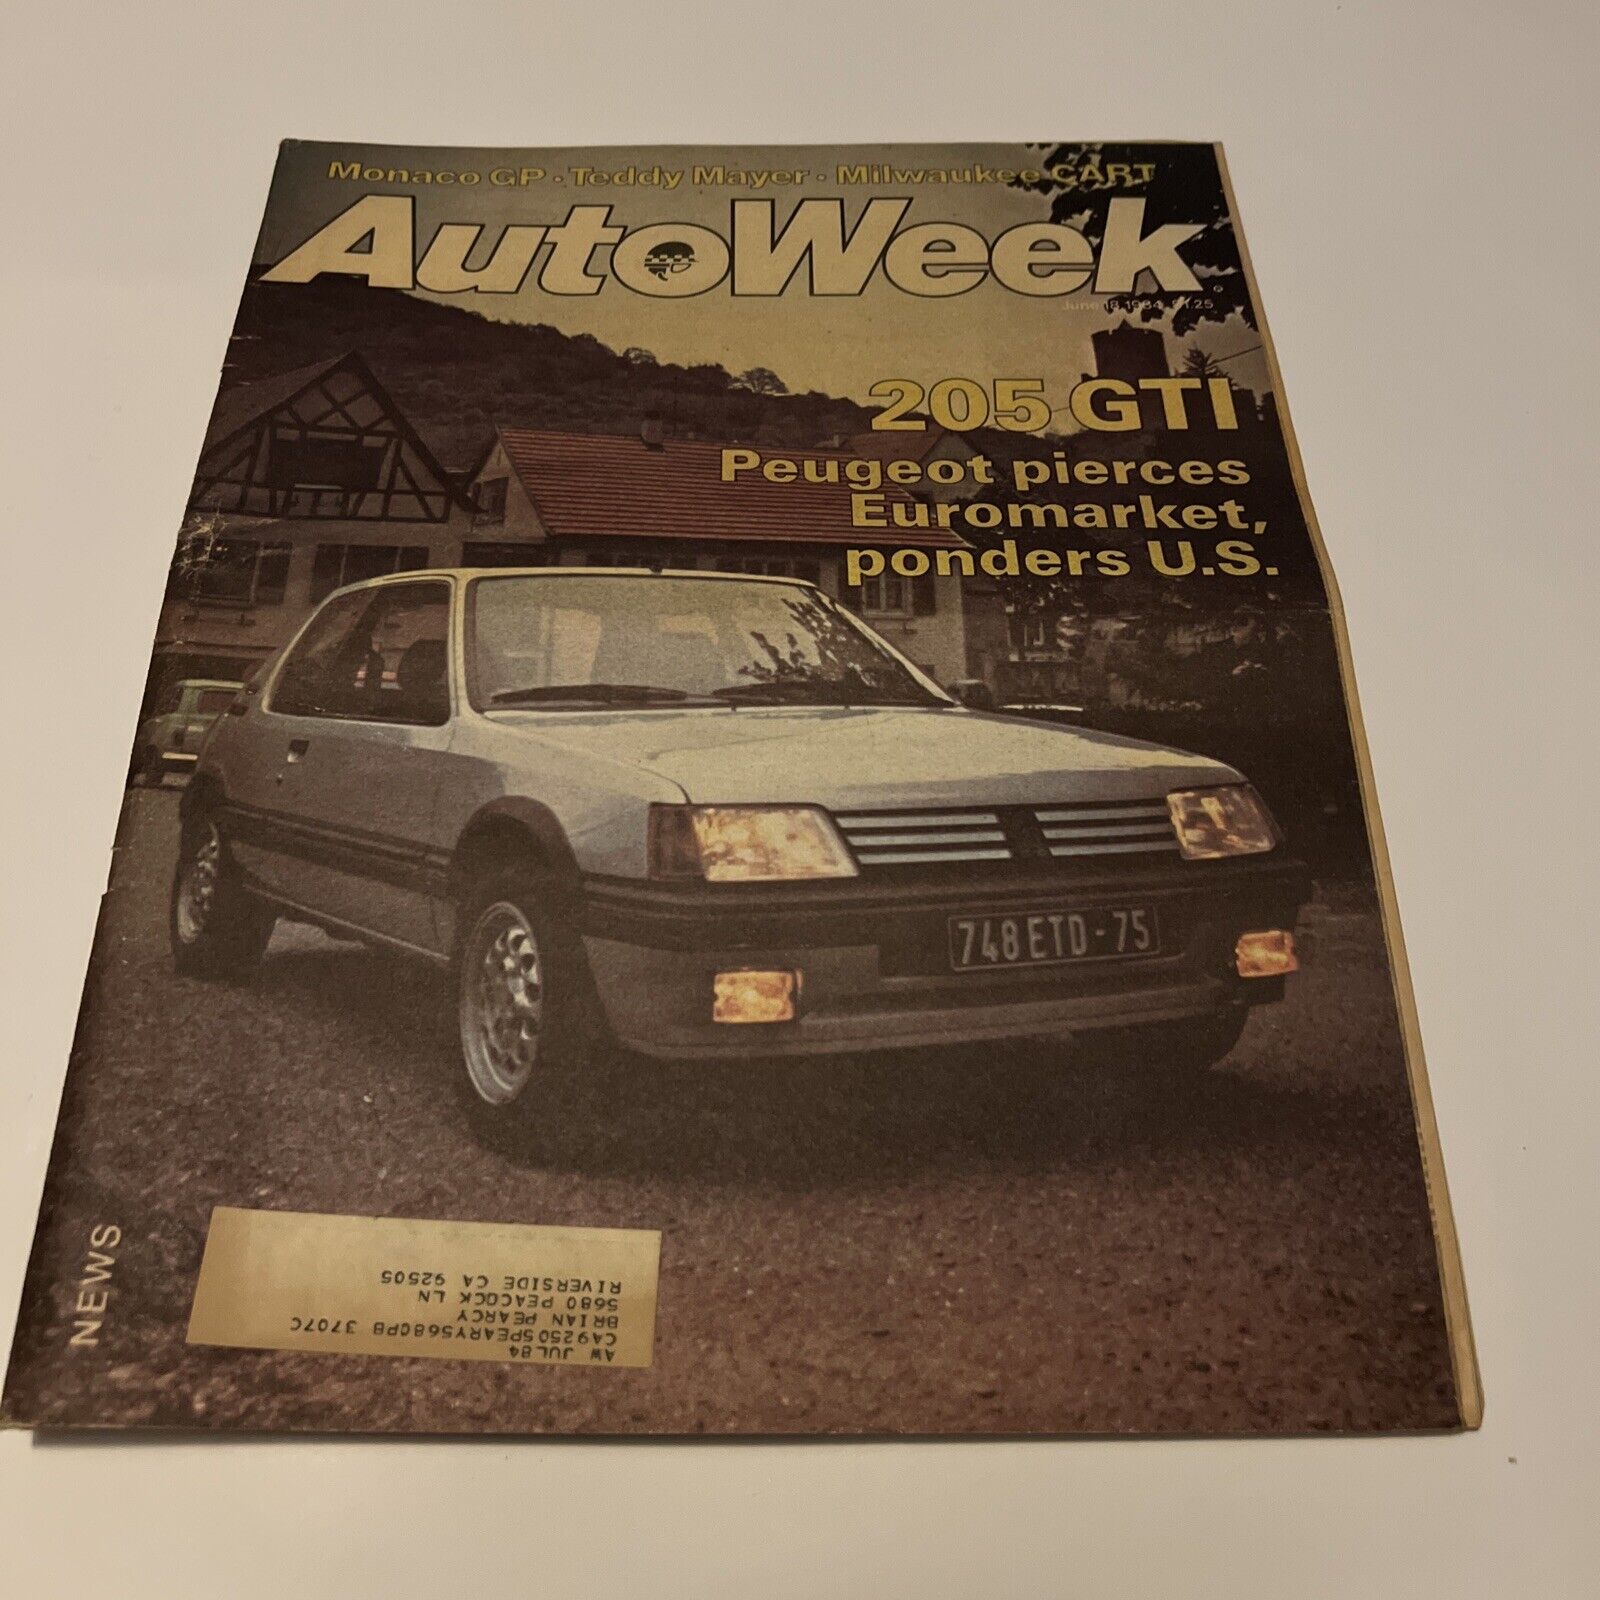 AutoWeek News June 18, 1984- 250 GTI Peugeot